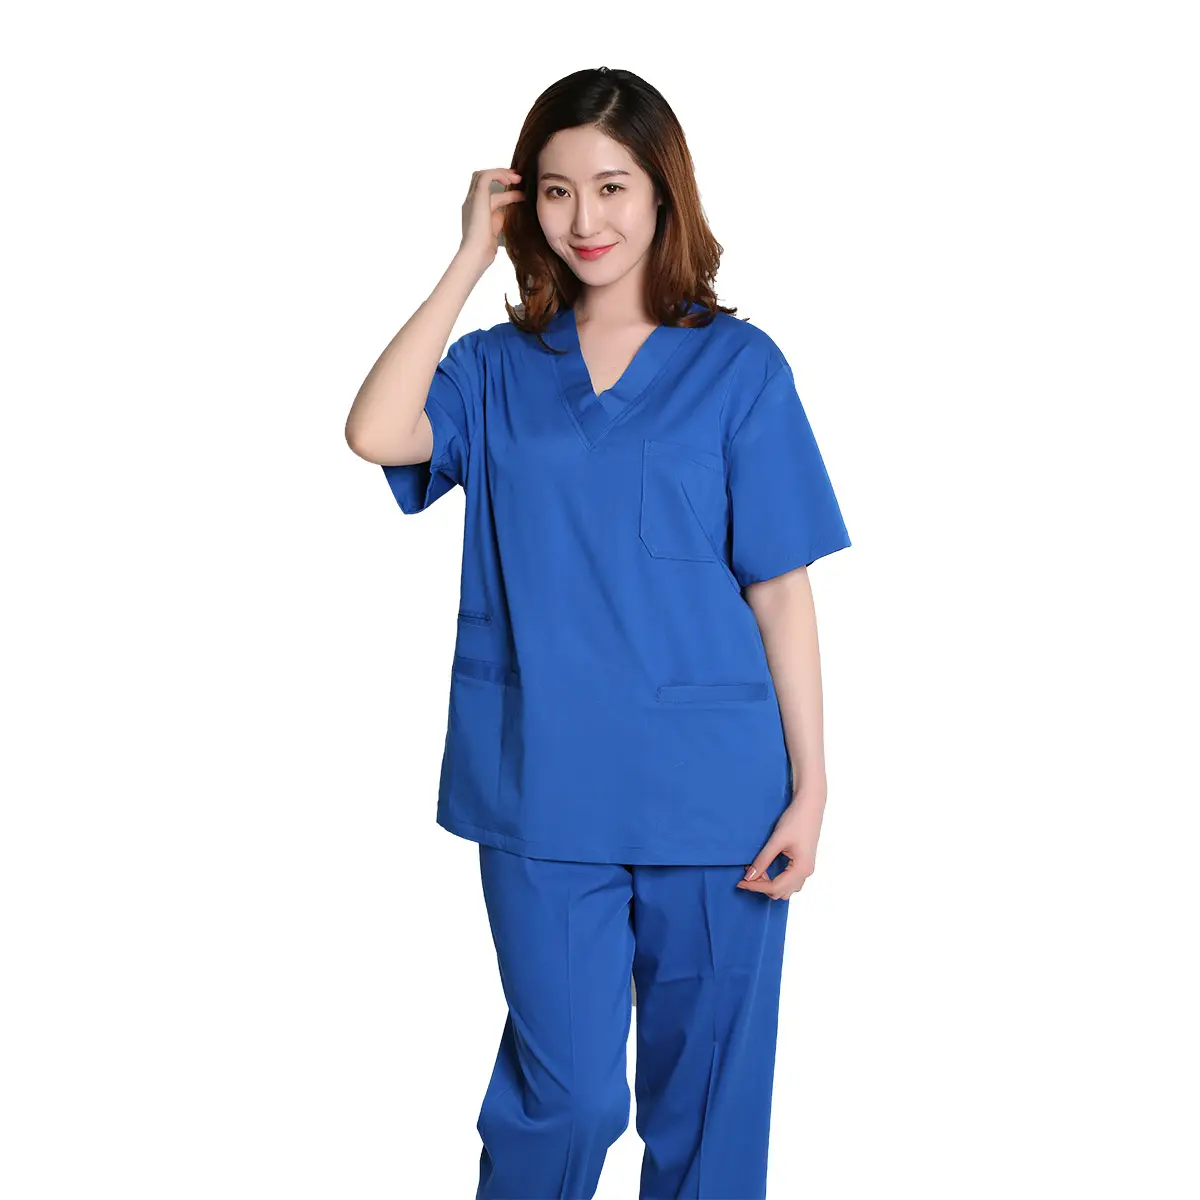 Nuevo Modelo de Hospital uniforme de las enfermeras